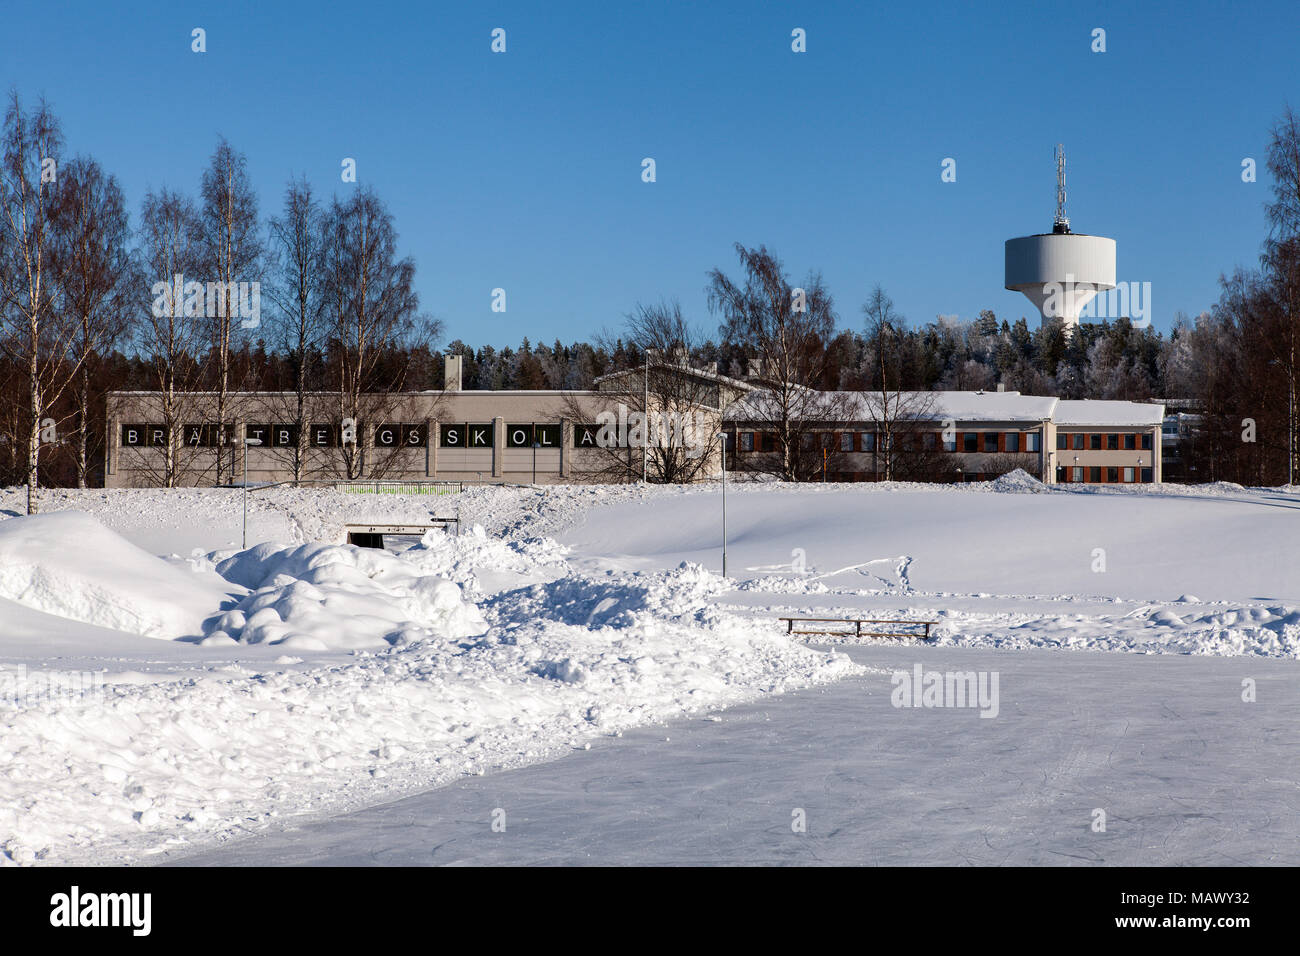 UMEA, Schweden am 22. Februar 2018. Anzeigen einer Schule - Gebäude und ein Turm. Skating - Eis und Street diese Seite. Winter. Editorial. Stockfoto